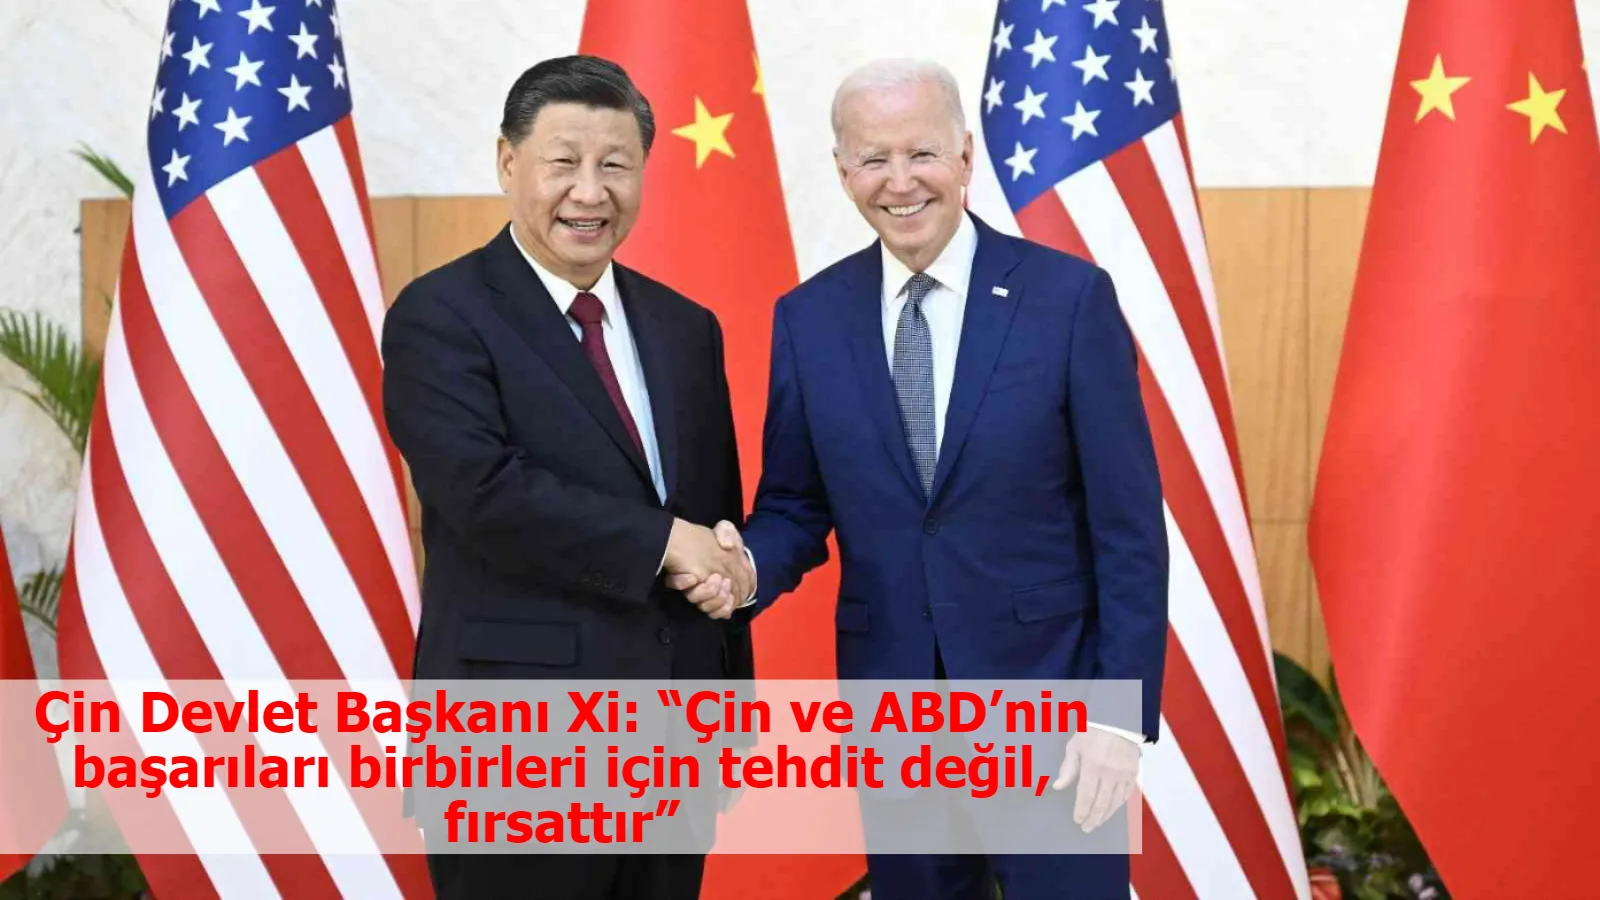 Çin Devlet Başkanı Xi: “Çin ve ABD’nin başarıları birbirleri için tehdit değil, fırsattır”